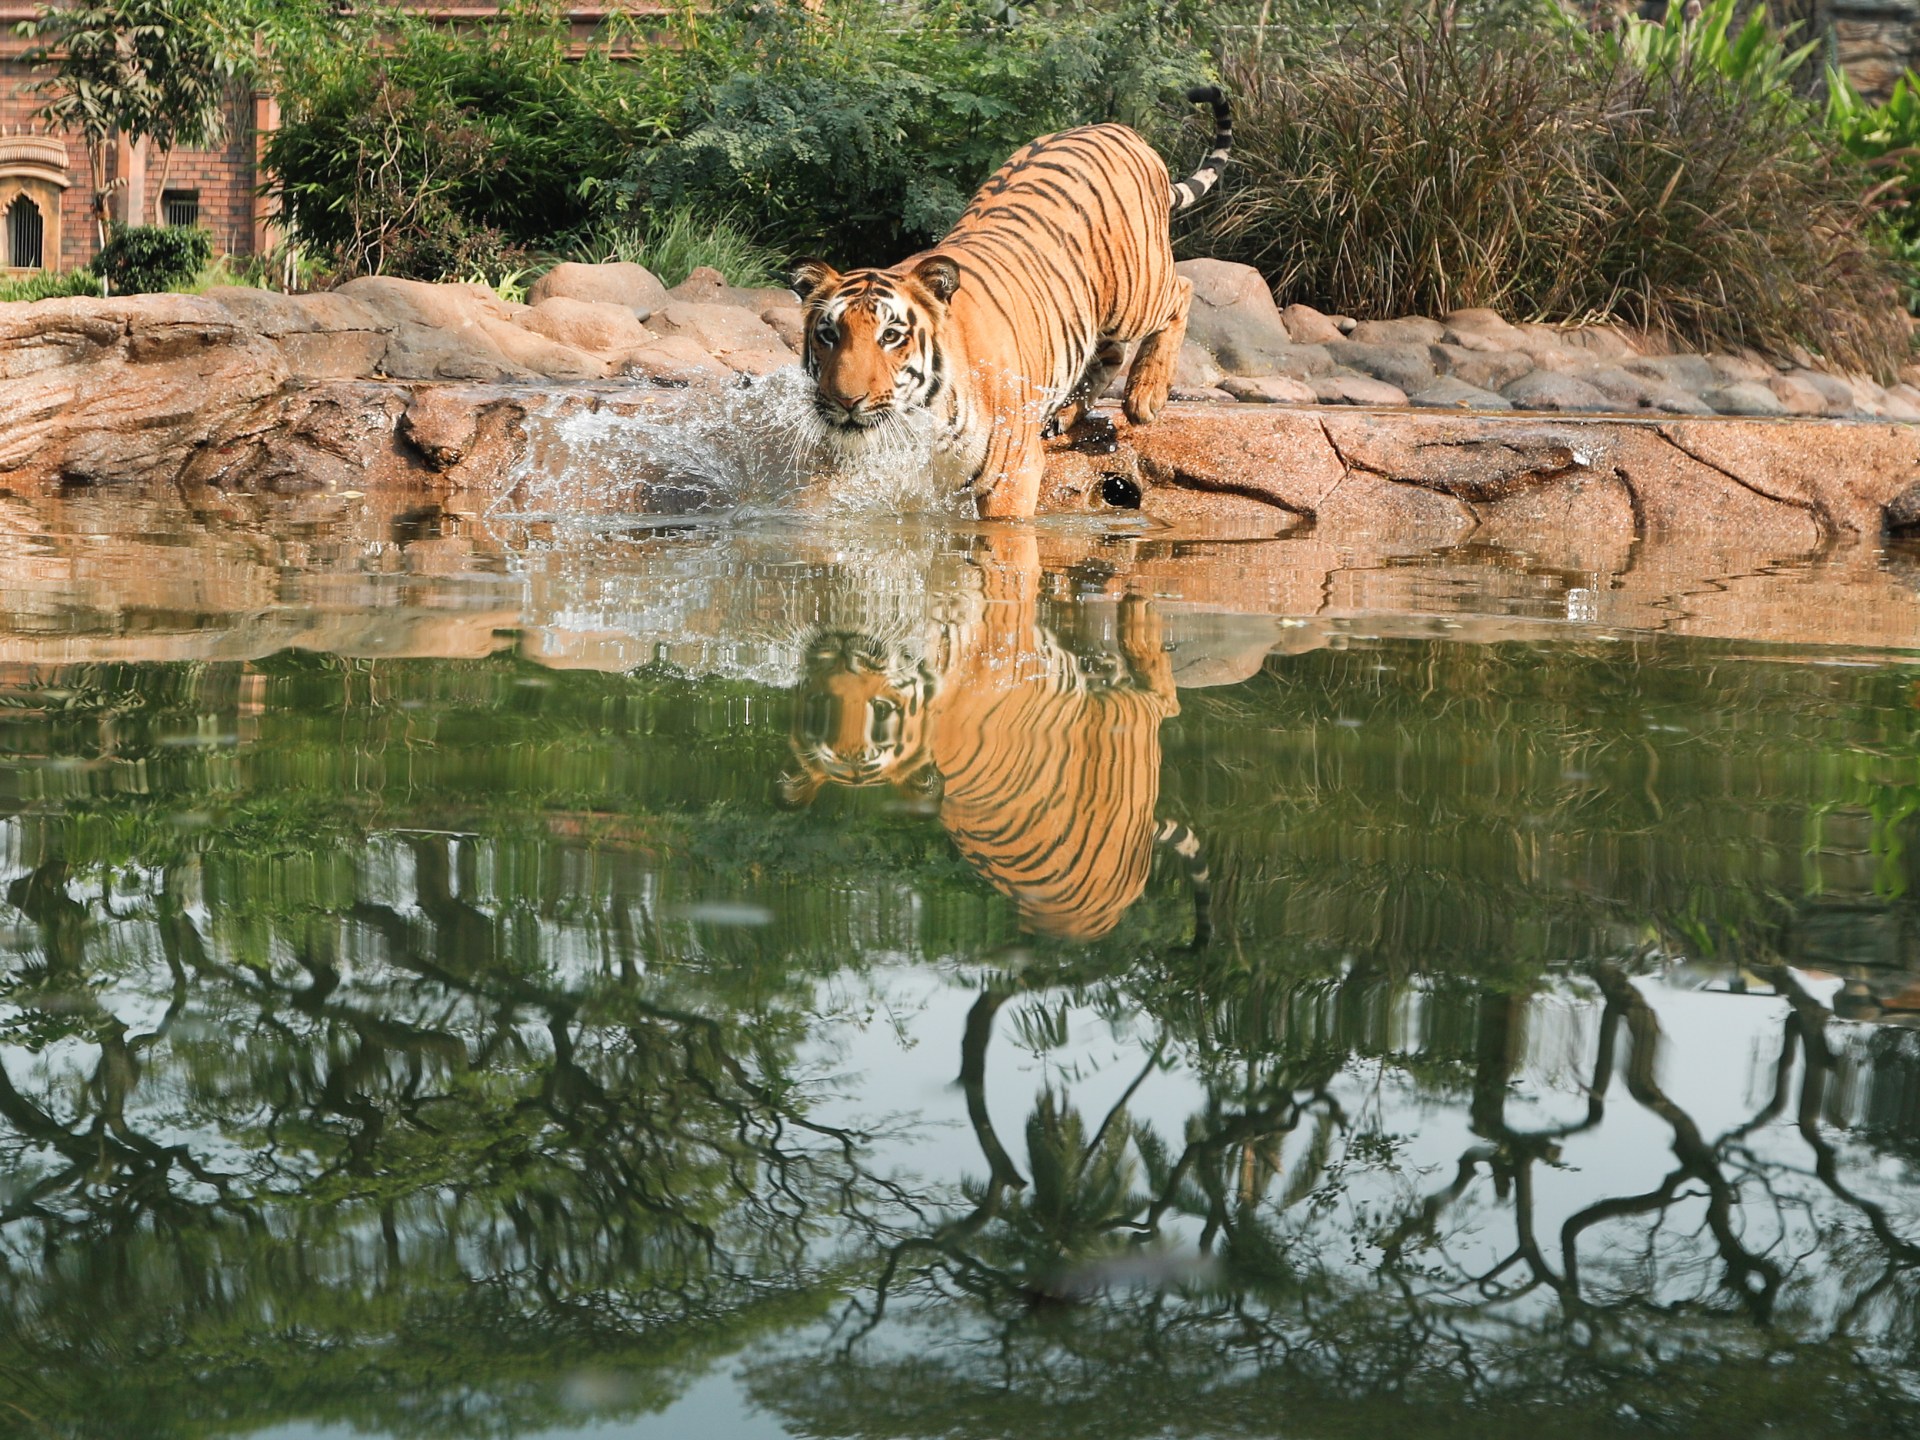 Populasi harimau di India mencapai 3.000, survei menemukan |  berita lingkungan